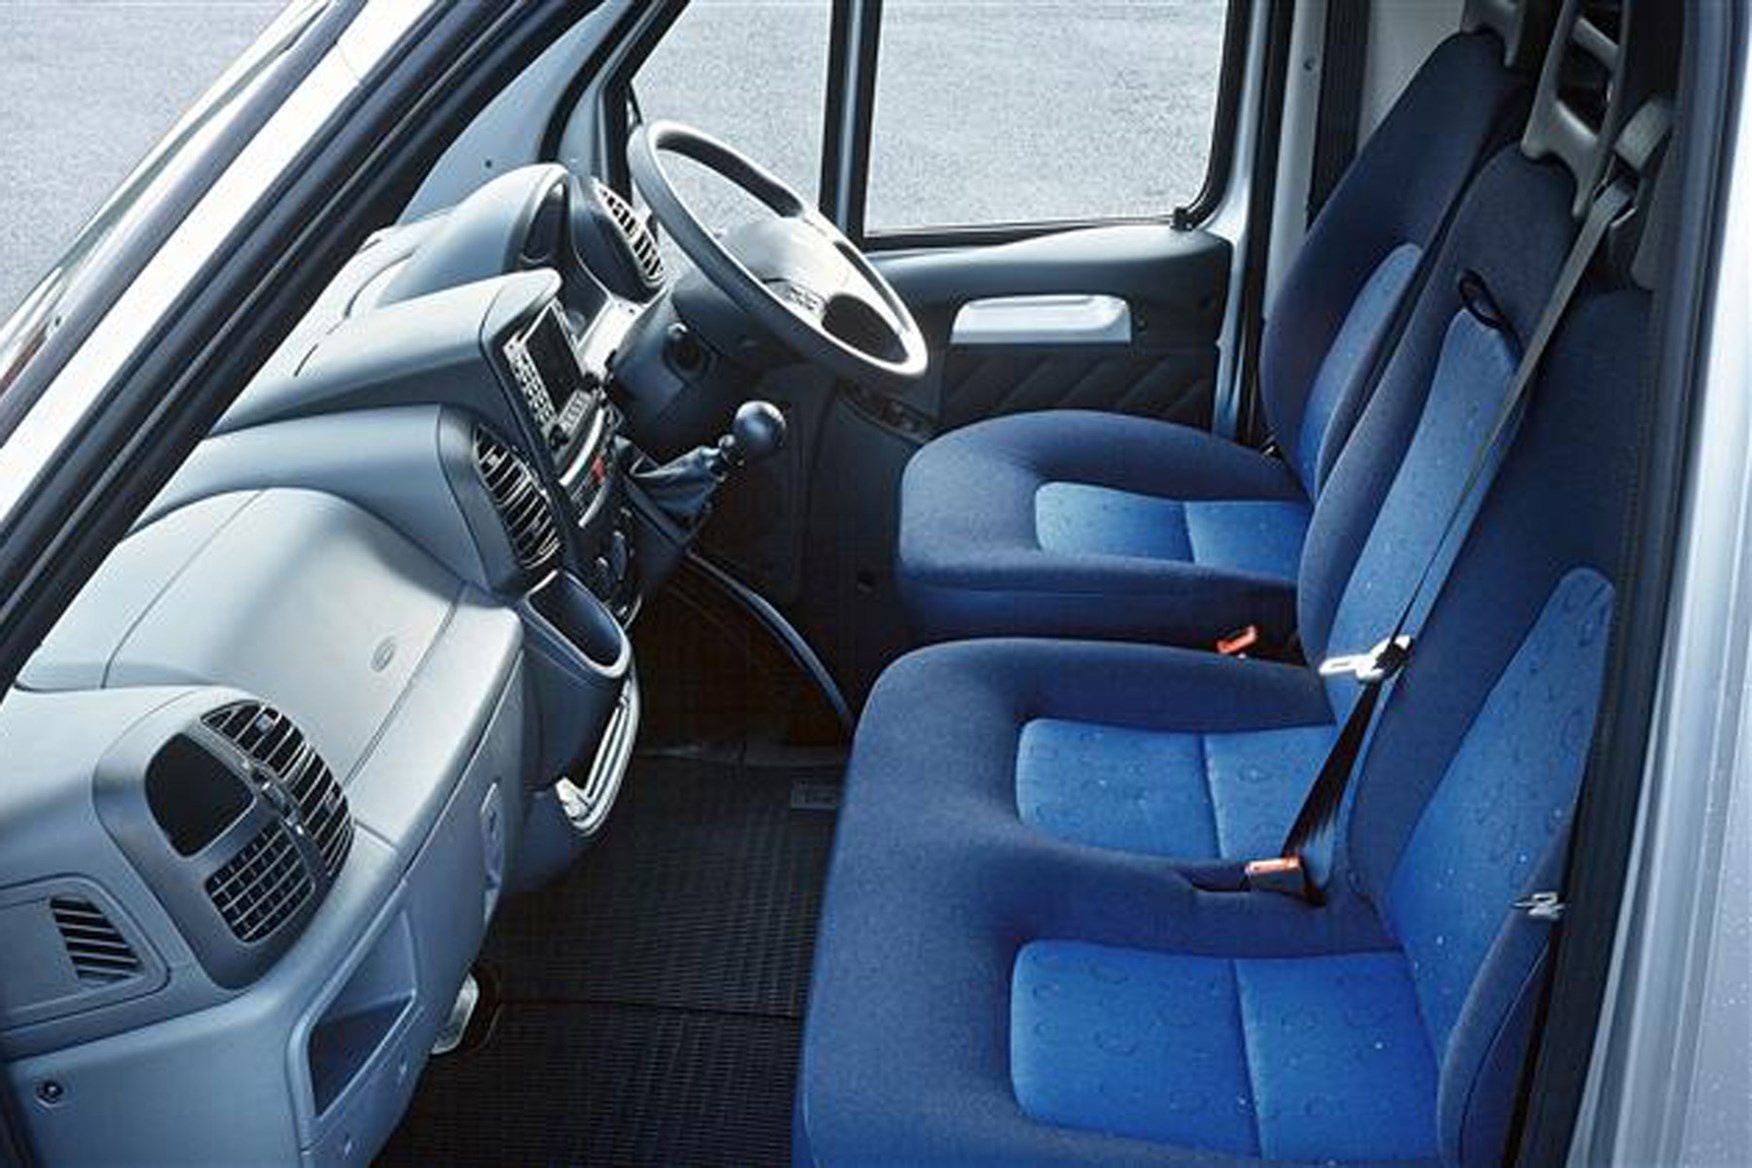 Peugeot Boxer review on Parkers Vans - cabin